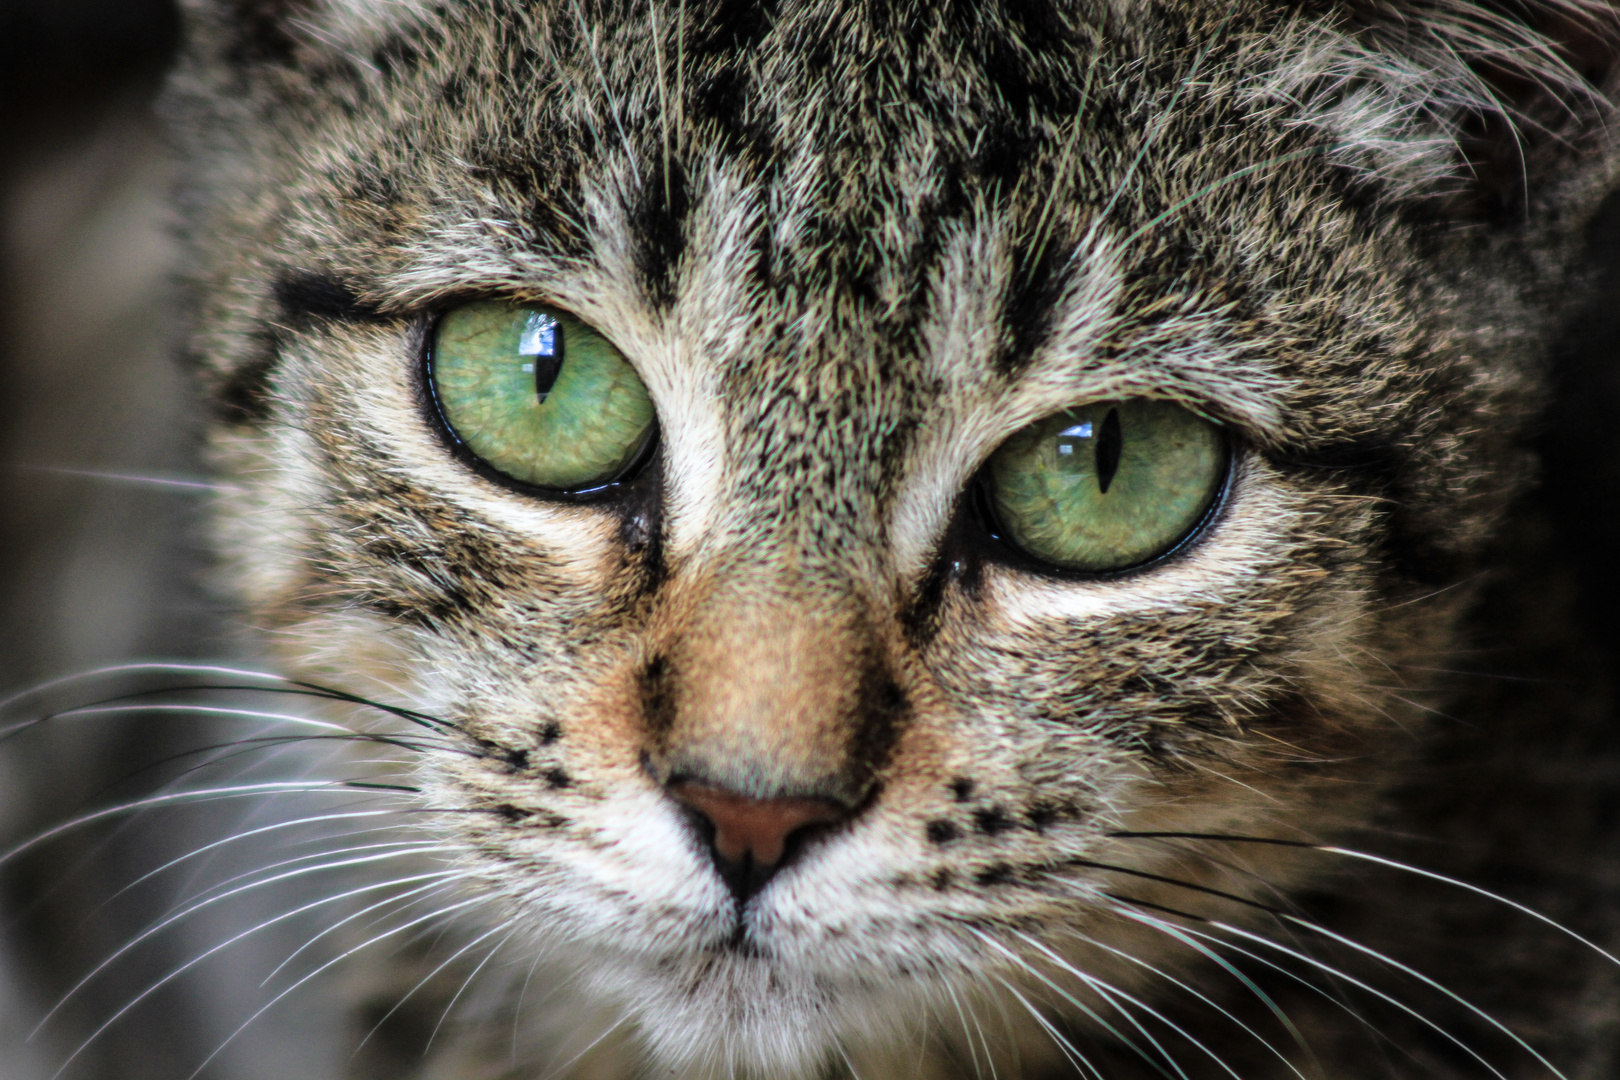 A cat's eyes